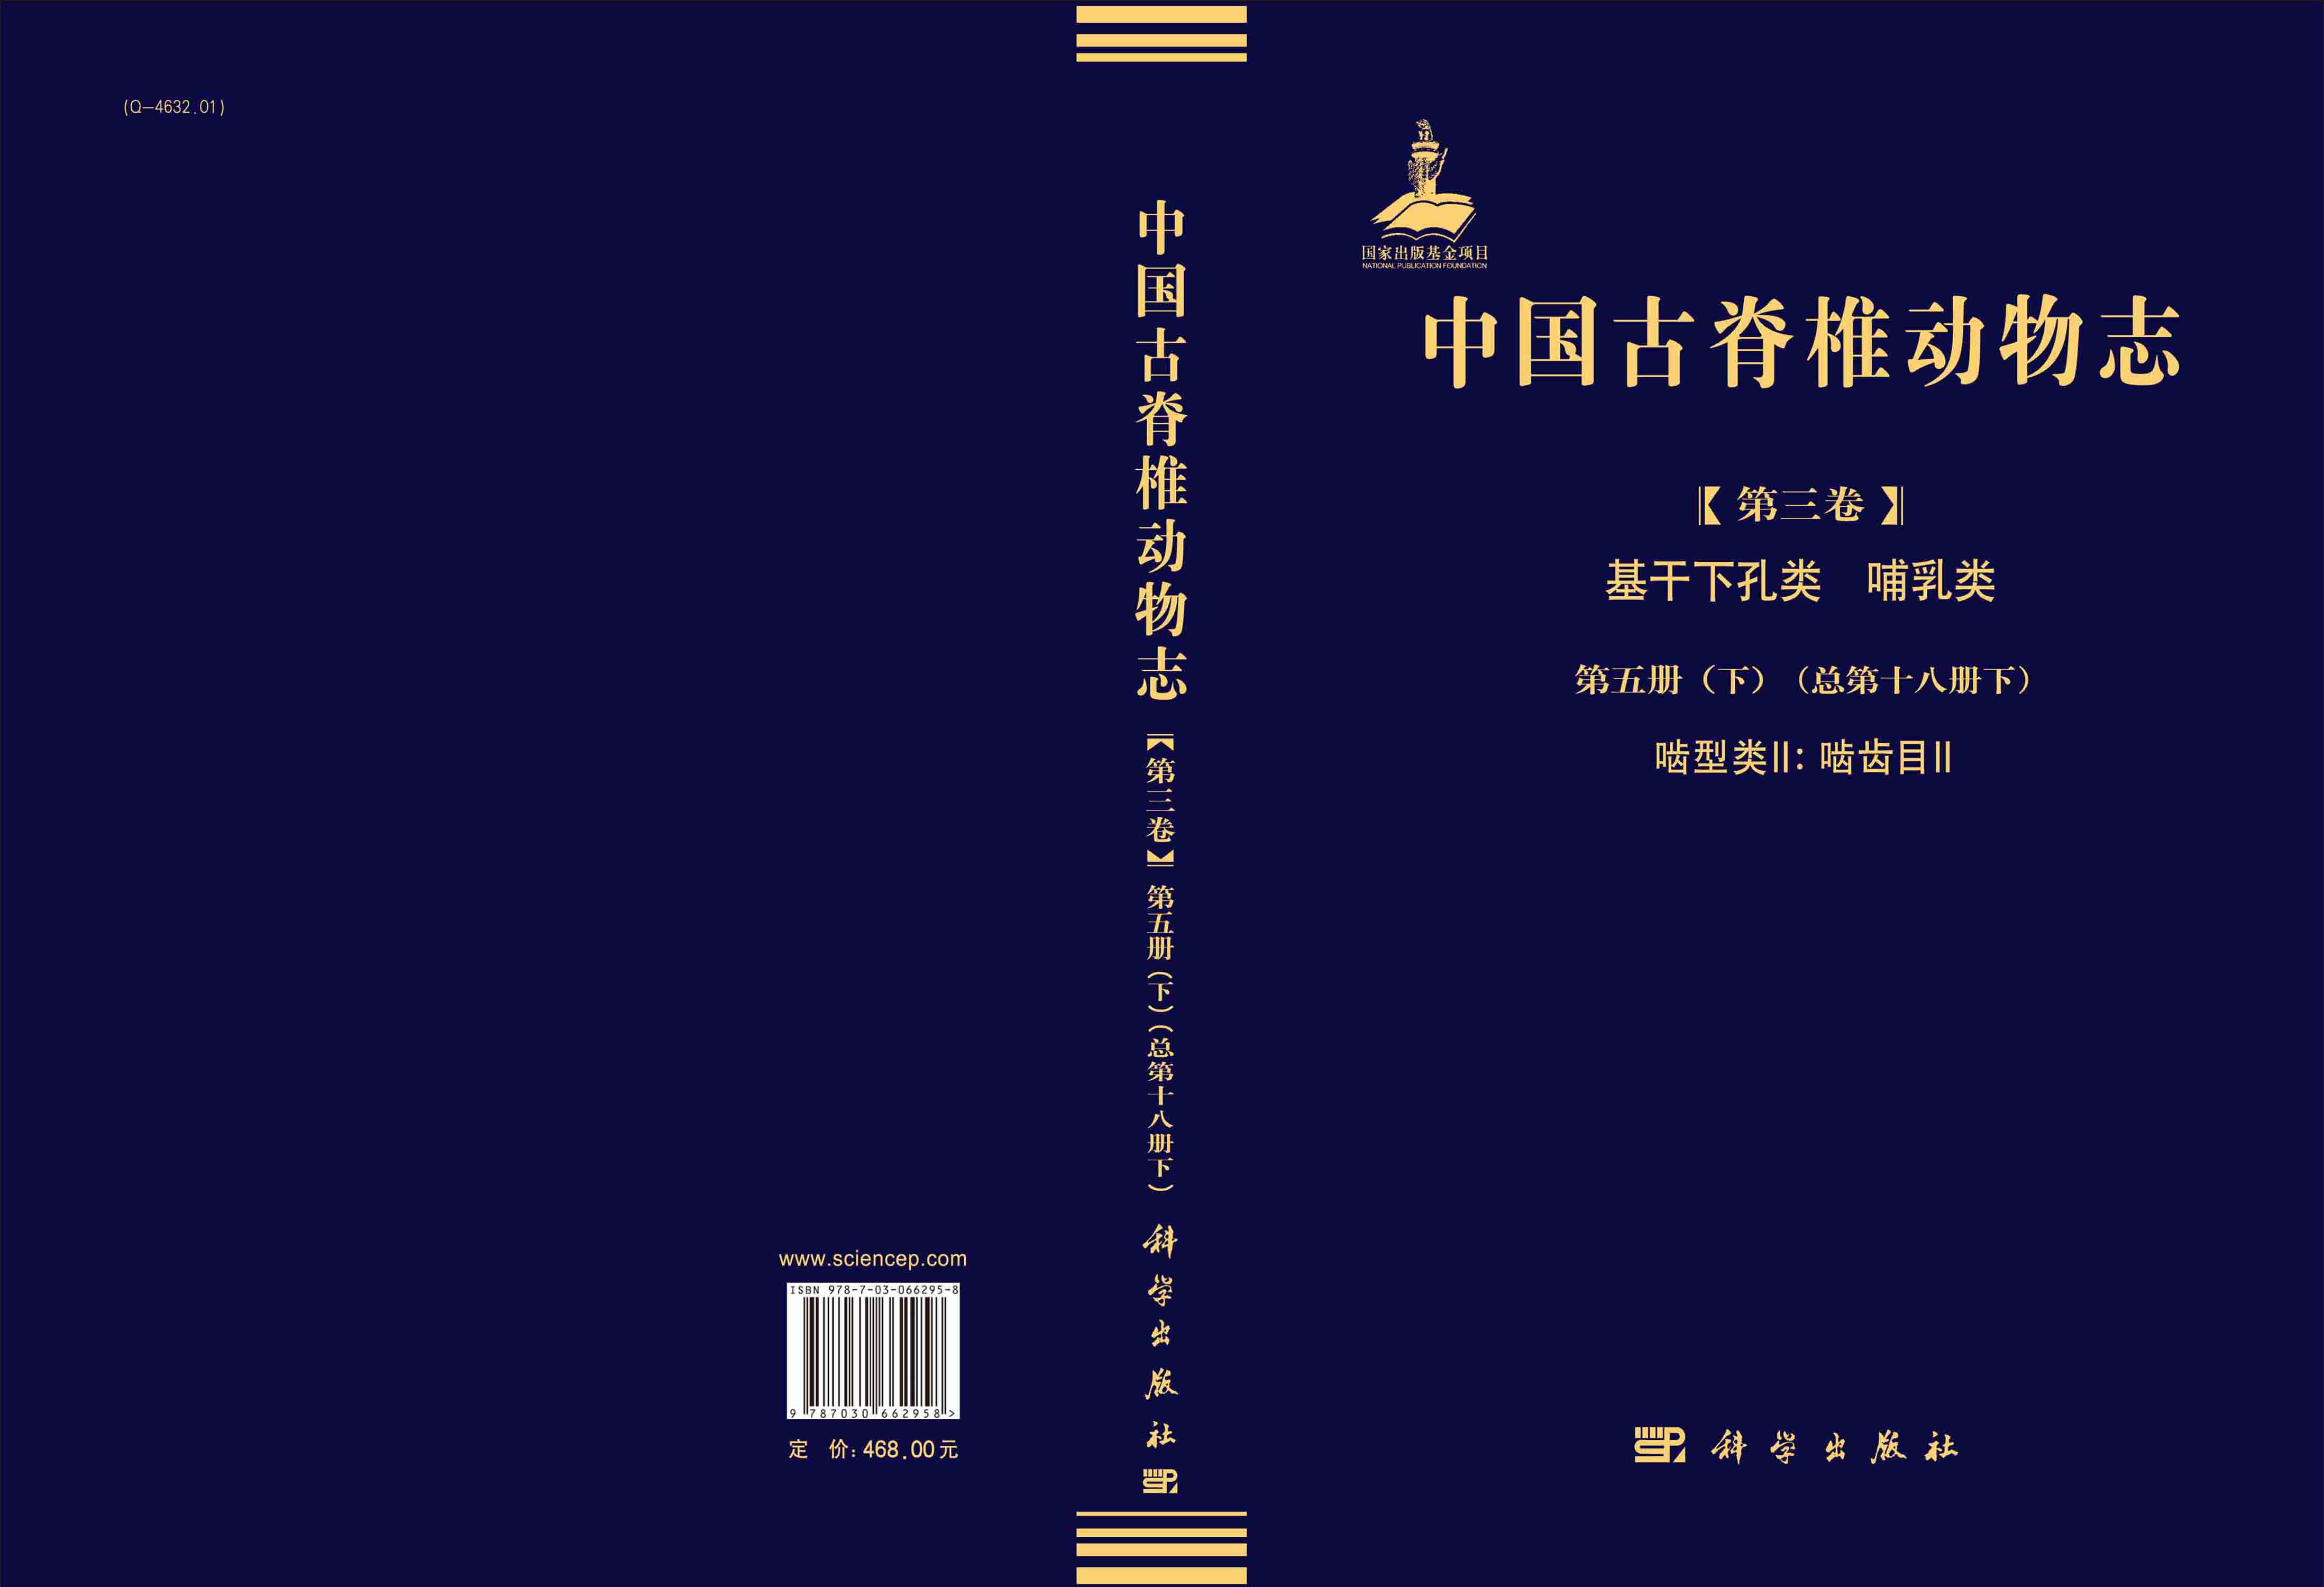 中国古脊椎动物志  第三卷 基干下孔类 哺乳类  第五册（下）（总第十八册下）  啮型类II：啮齿目II